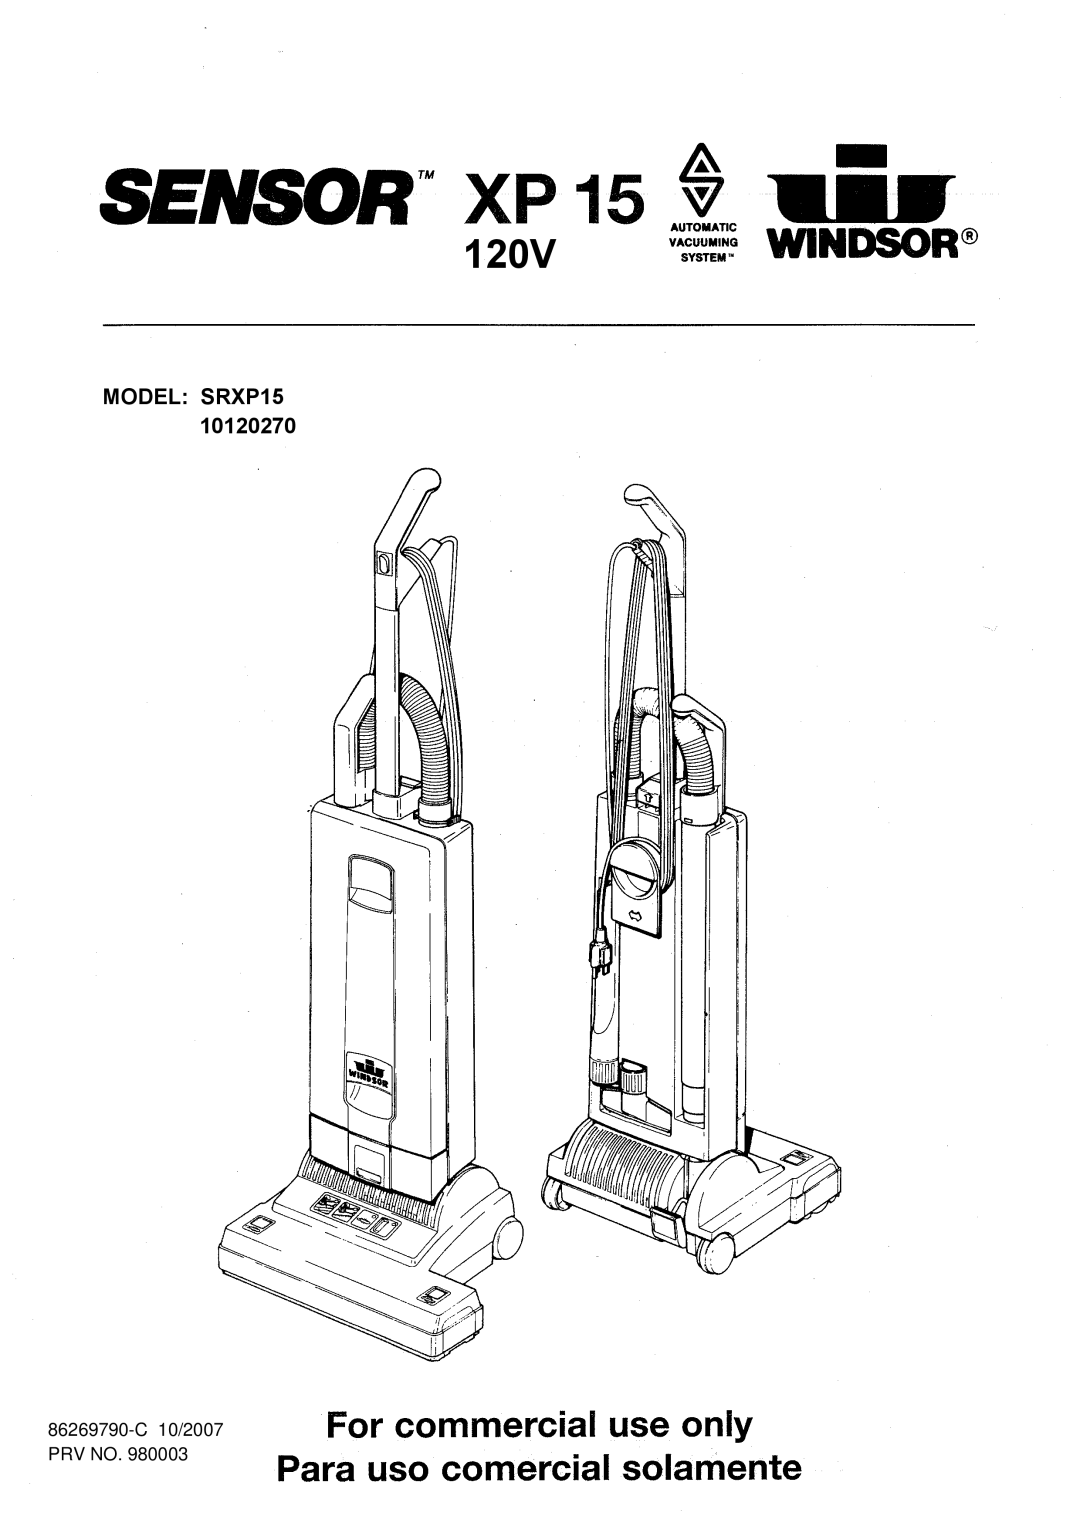 Windsor 10120270 manual 120V, MODEL SRXP15, 86269790-C10/2007 PRV NO 